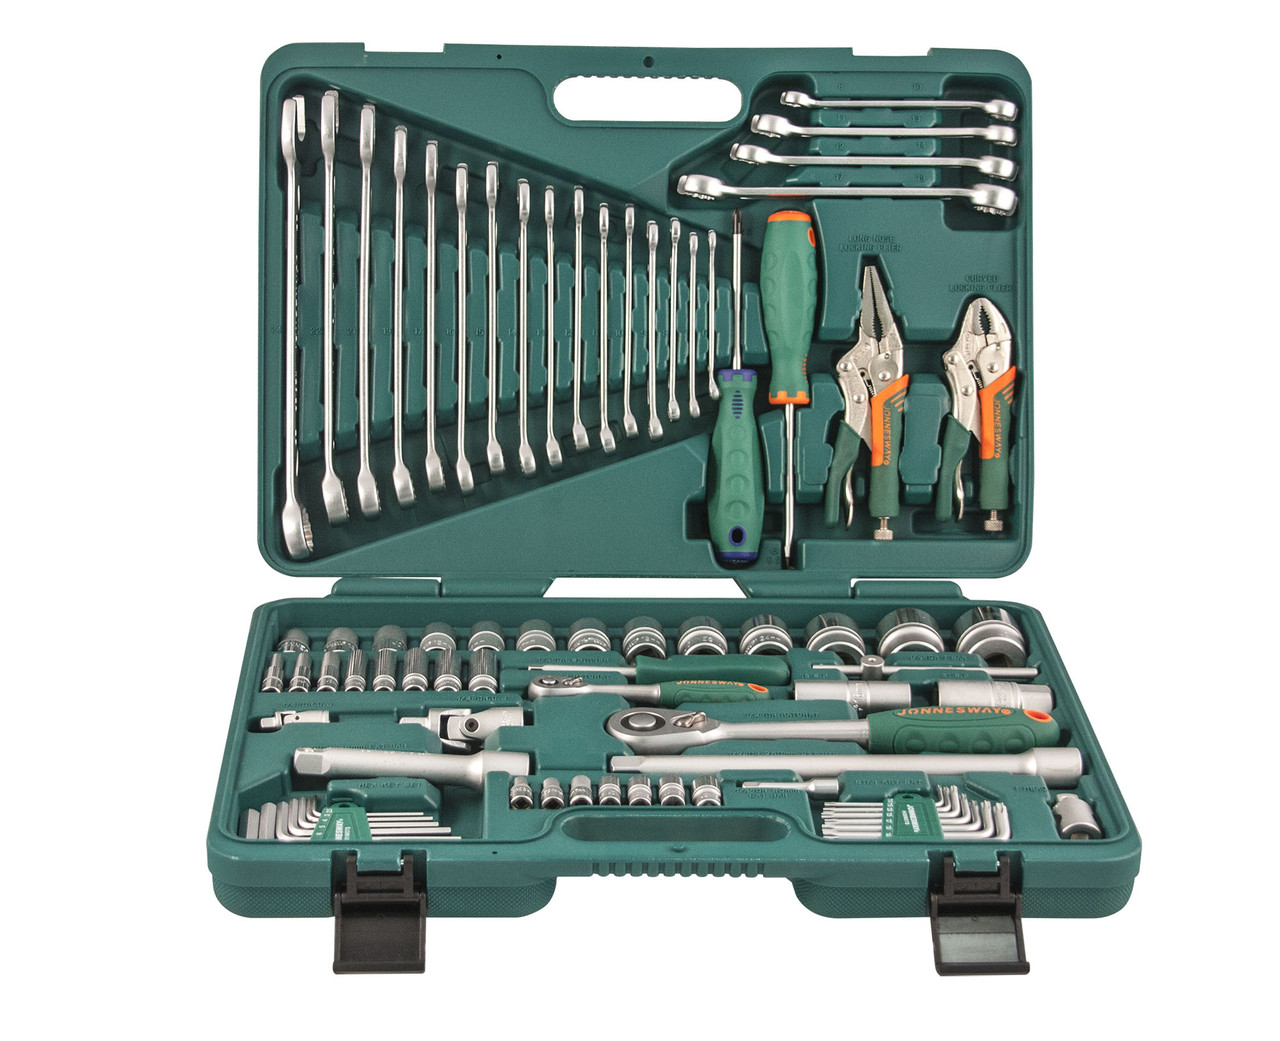 Универсальный набор торцевых головок 1/4"DR 5-12 мм и 1/2"DR 12-32 мм, отверток, комбинированных ключей 6-24 мм, разрезных ключей 8-19 мм и угловых